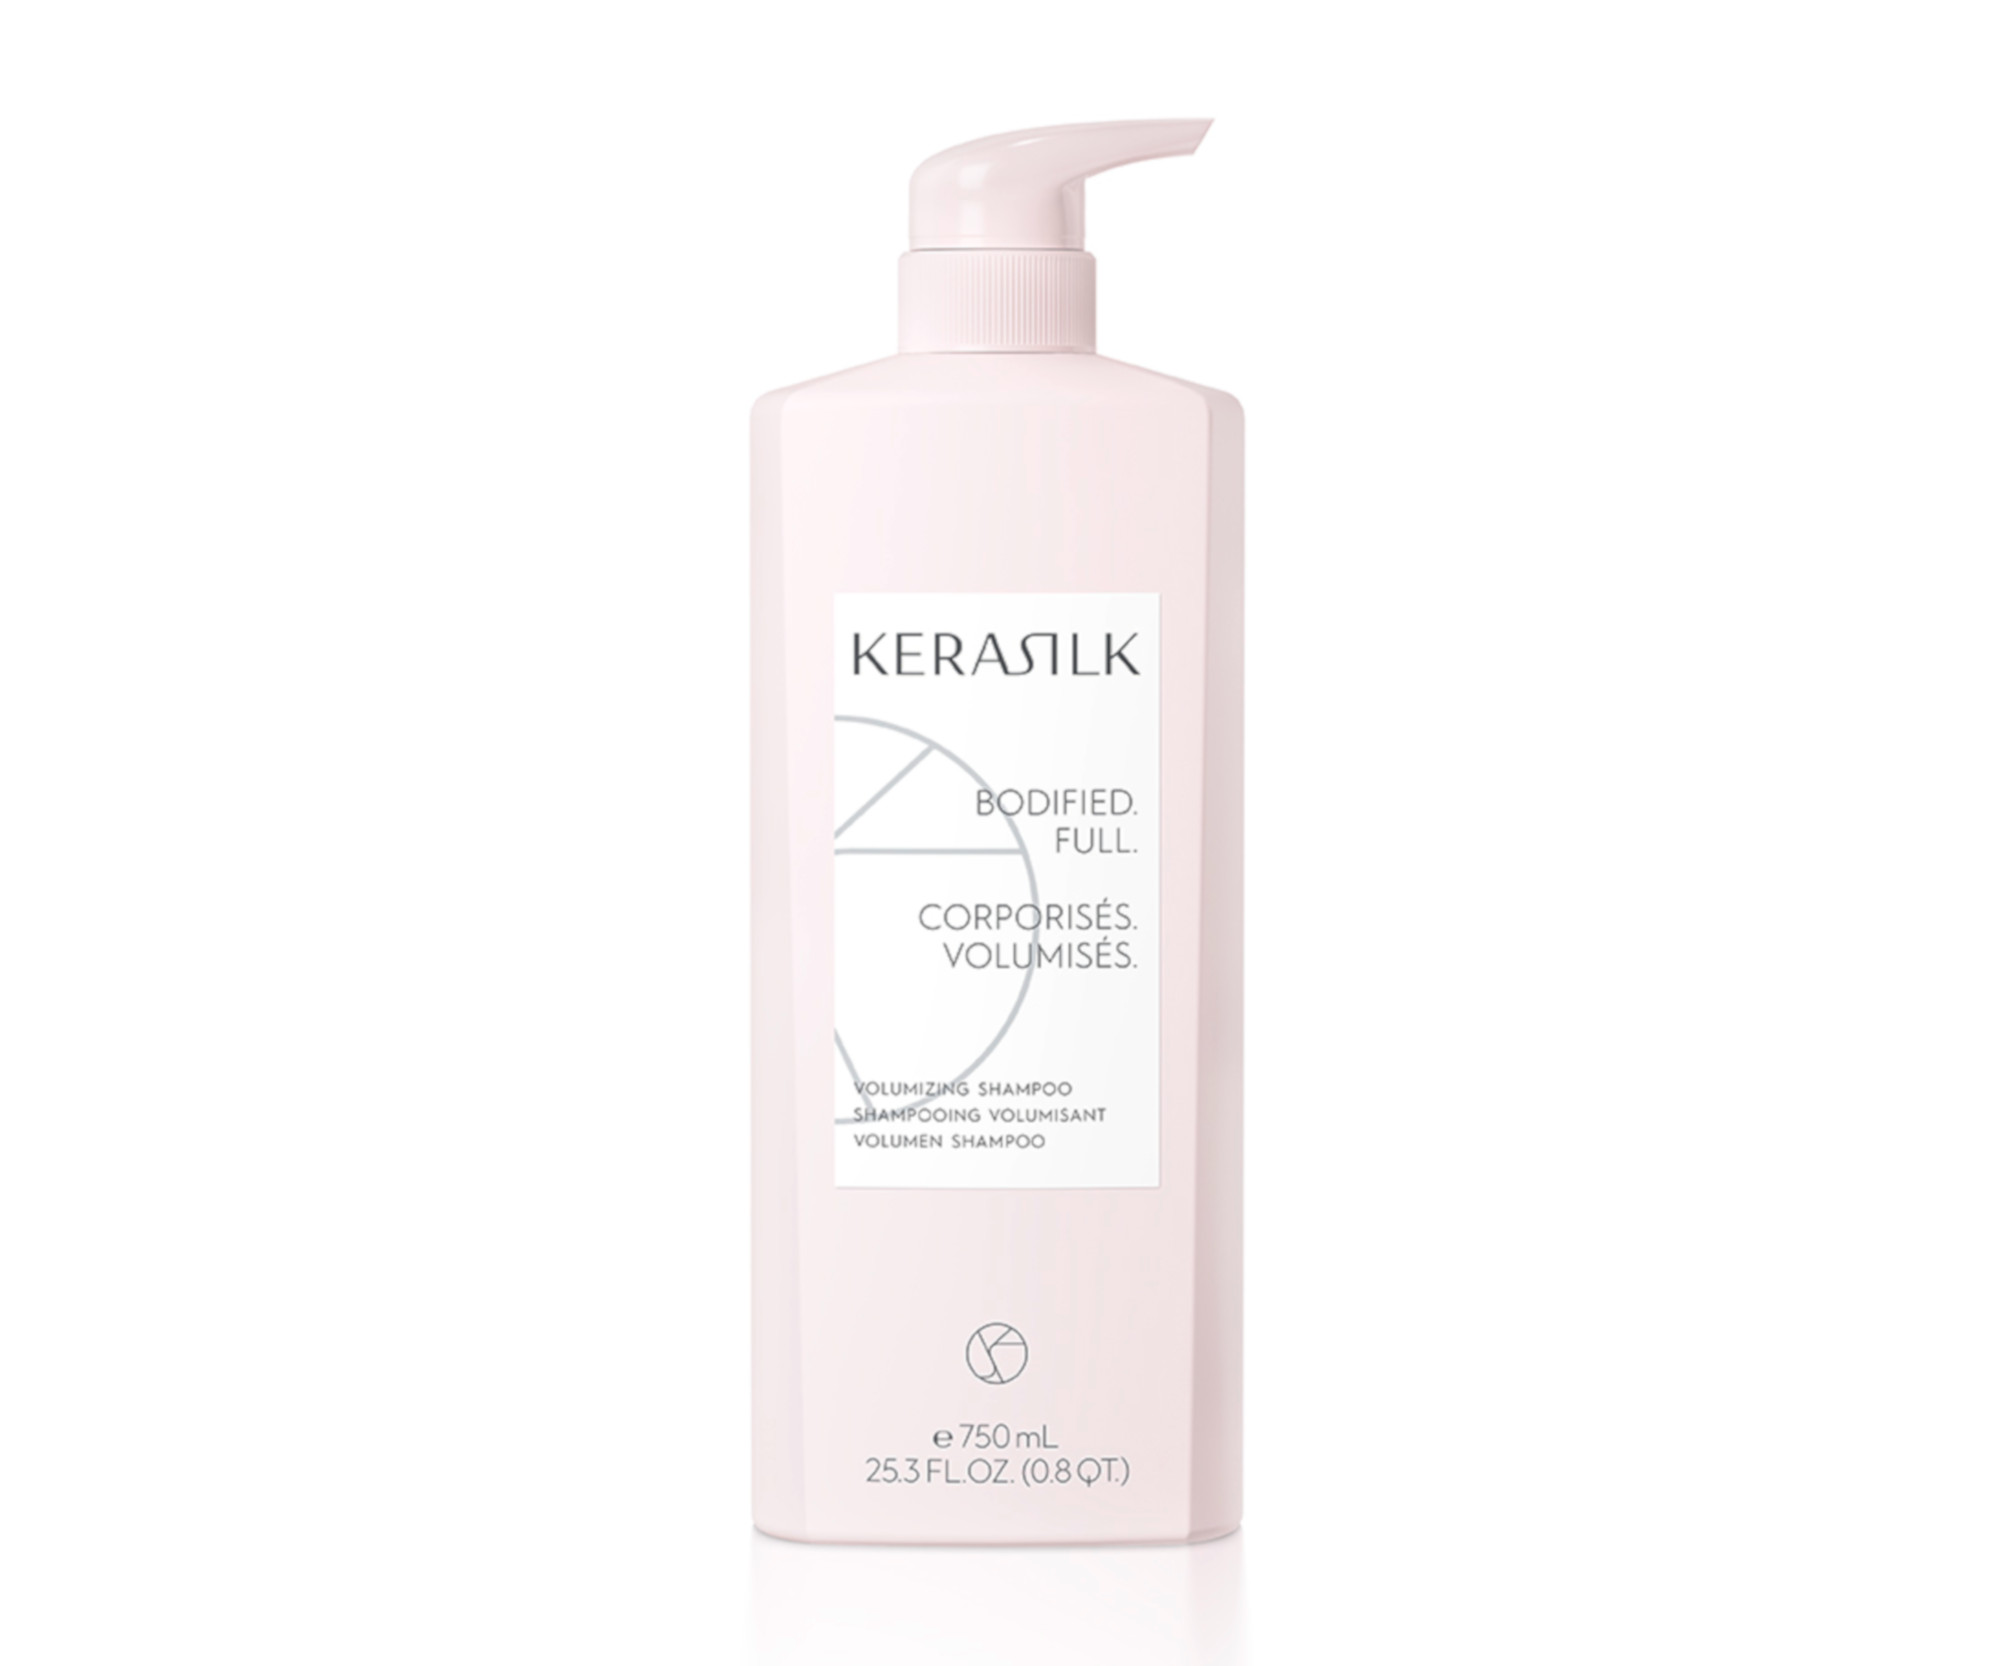 Jemně čistící šampon pro zvětšení objemu vlasů Kerasilk Volumizing Shampoo - 750 ml (511110) + DÁREK ZDARMA